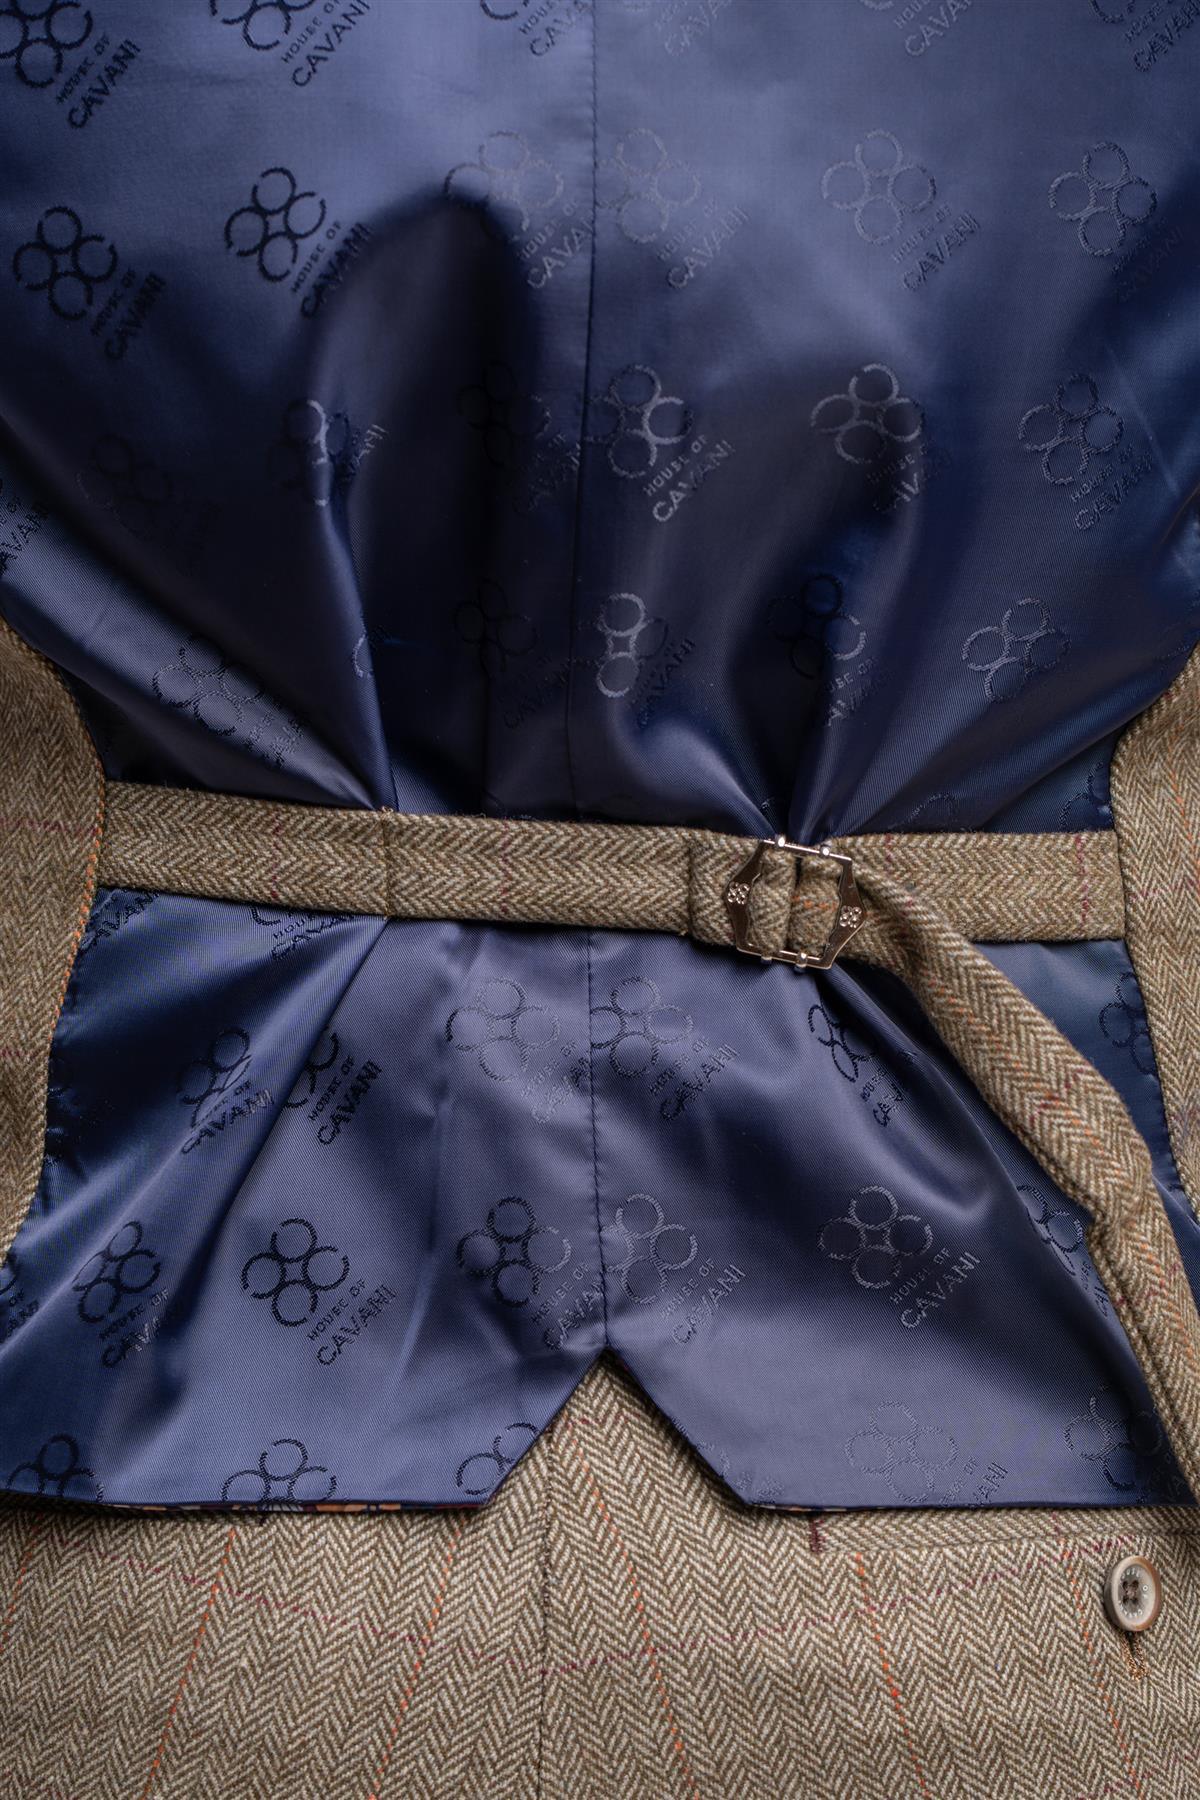 Gastson sage tweed waistcoat back detail